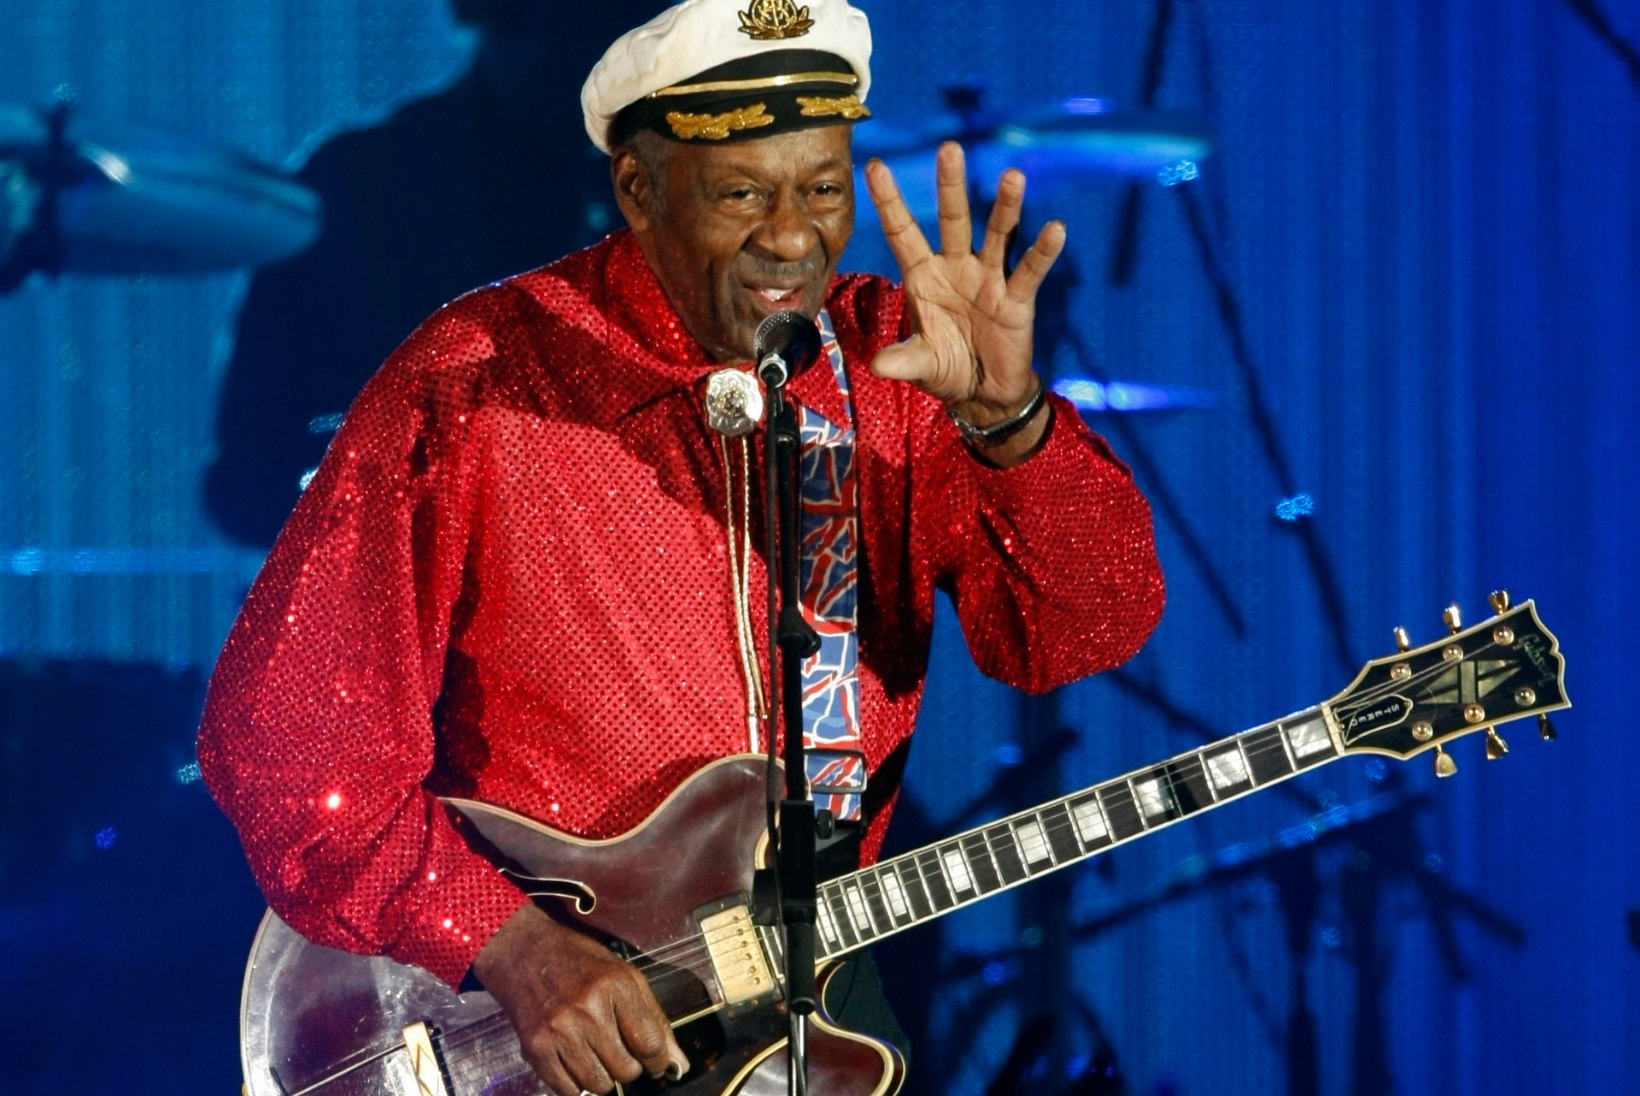 PALJU ÕNNE! Muusikalegend Chuck Berry teatas oma 90. sünnipäeval, et oodata on uut plaati